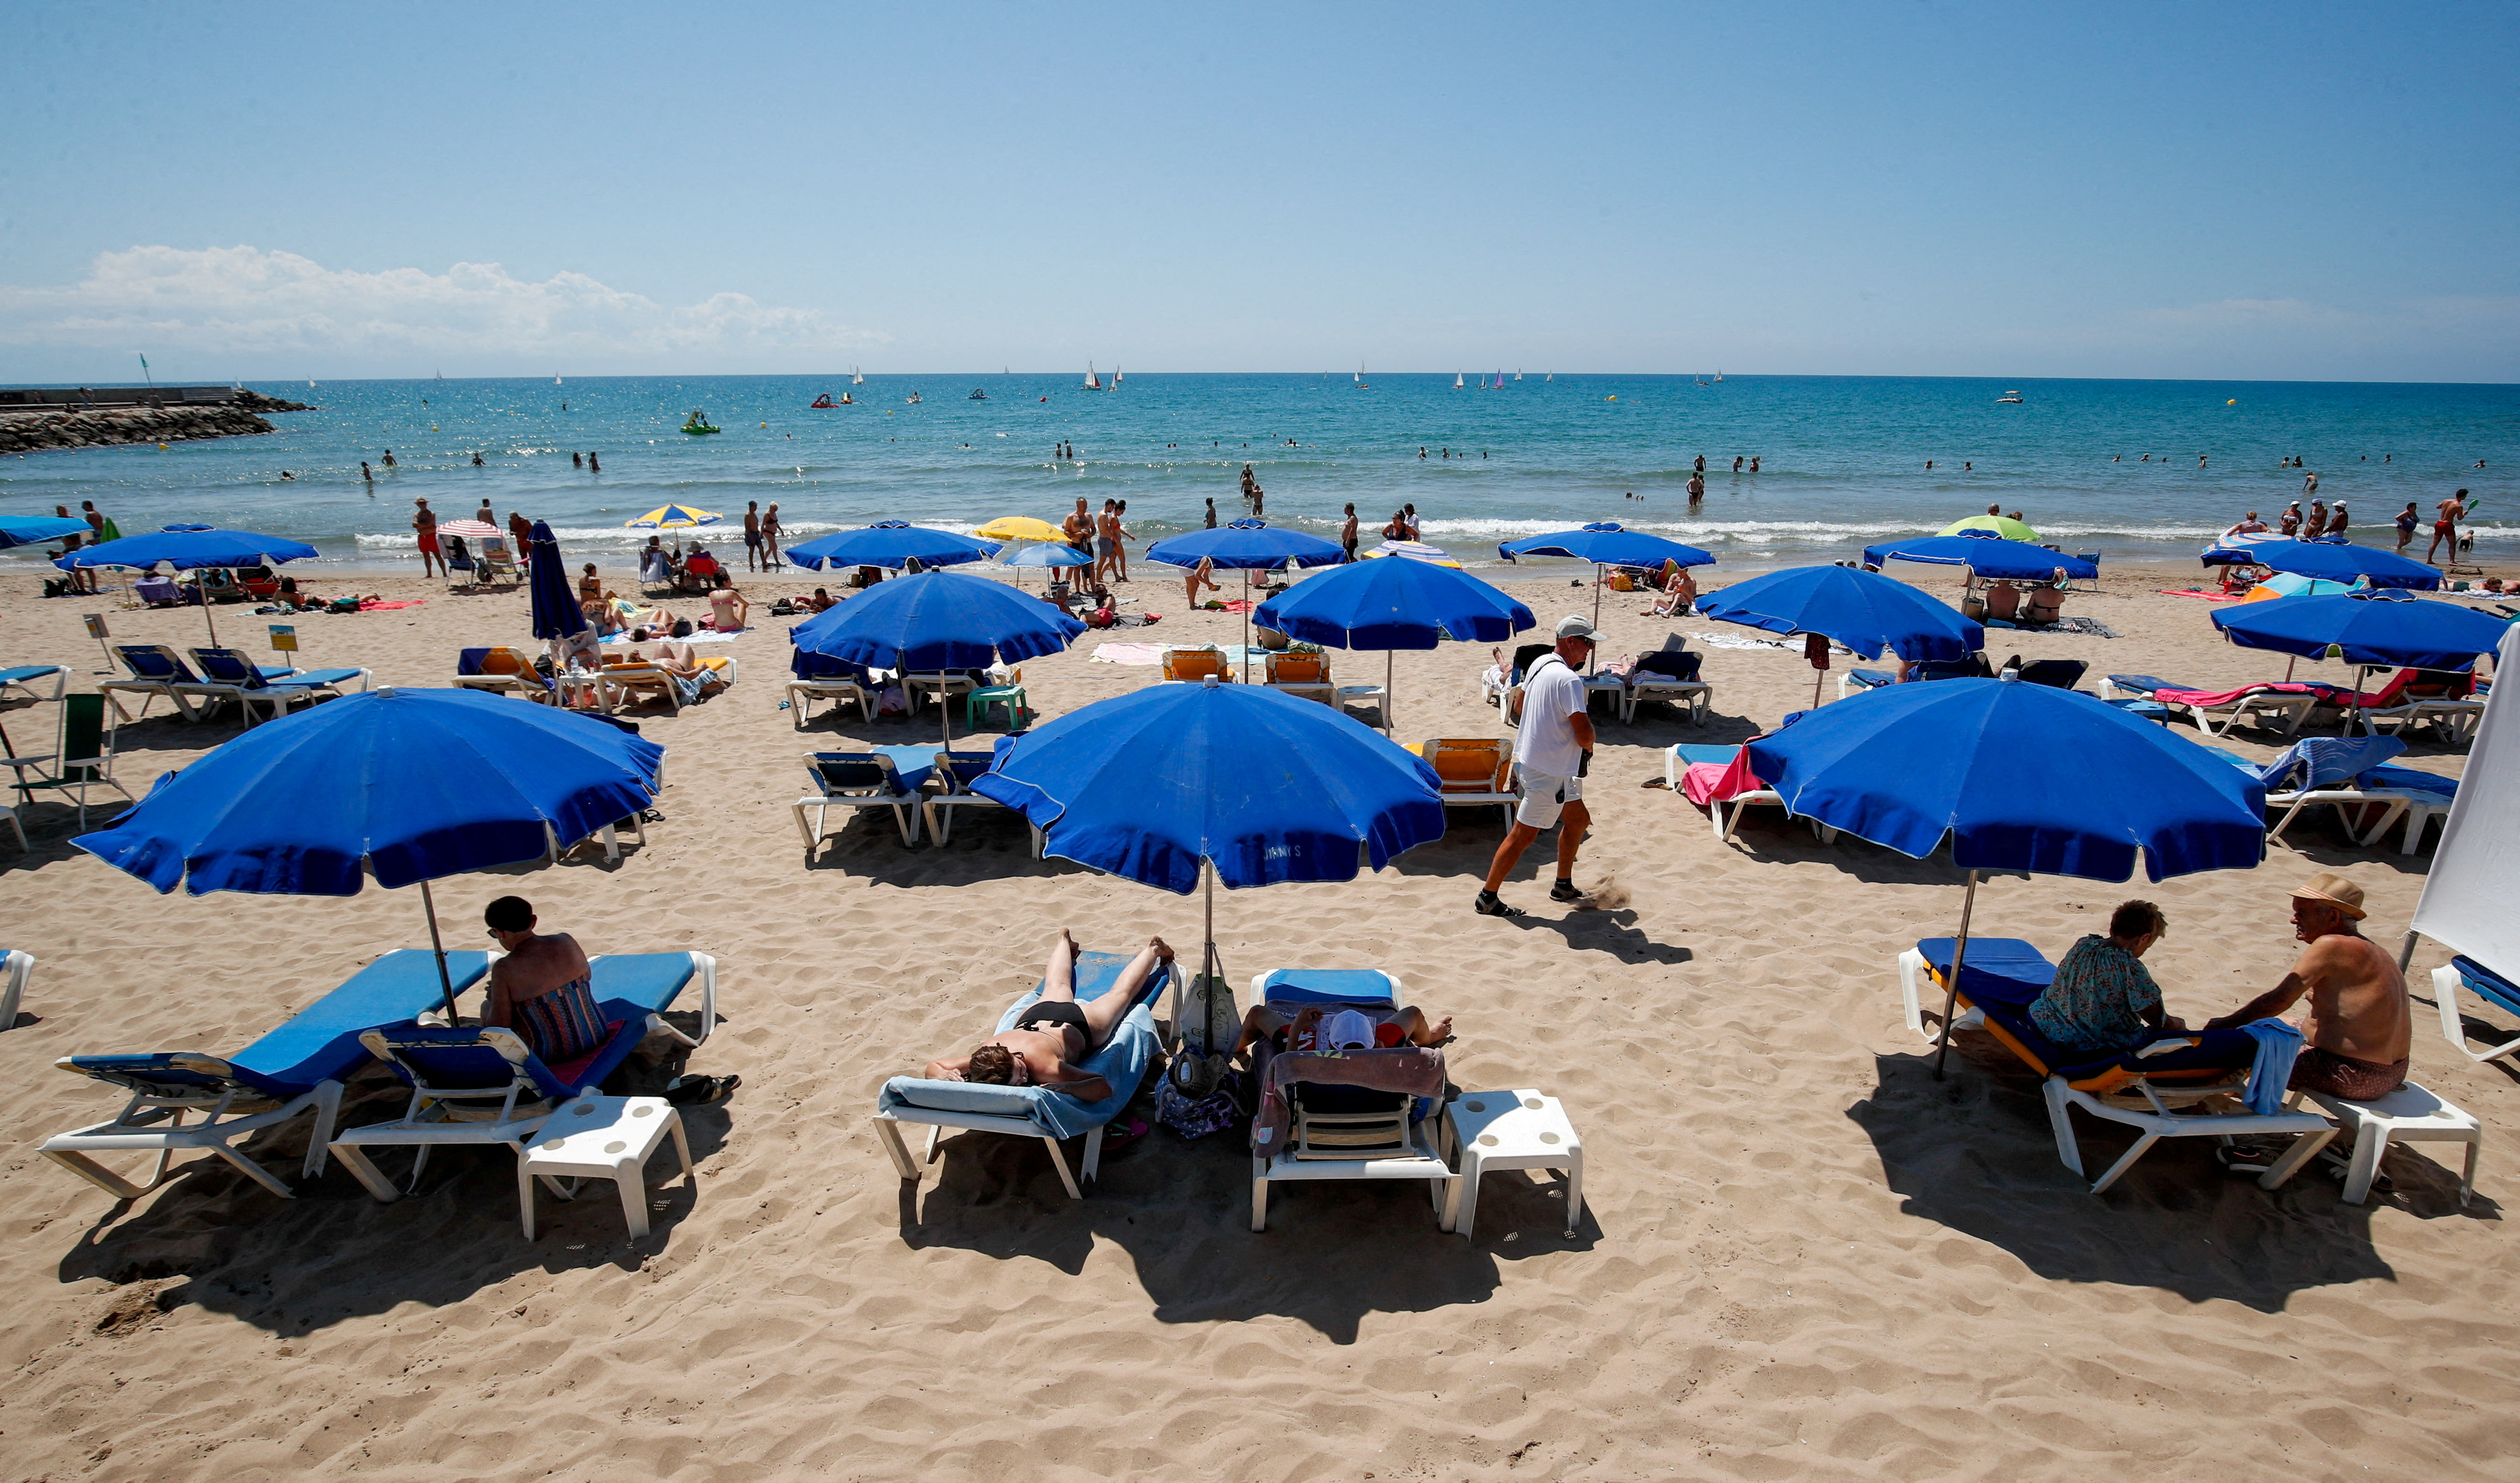 Les gens se rafraîchissent sur une plage de la ville de Sitges, au sud de Barcelone, Espagne, le 15 juillet 2021. REUTERS/Albert Gea